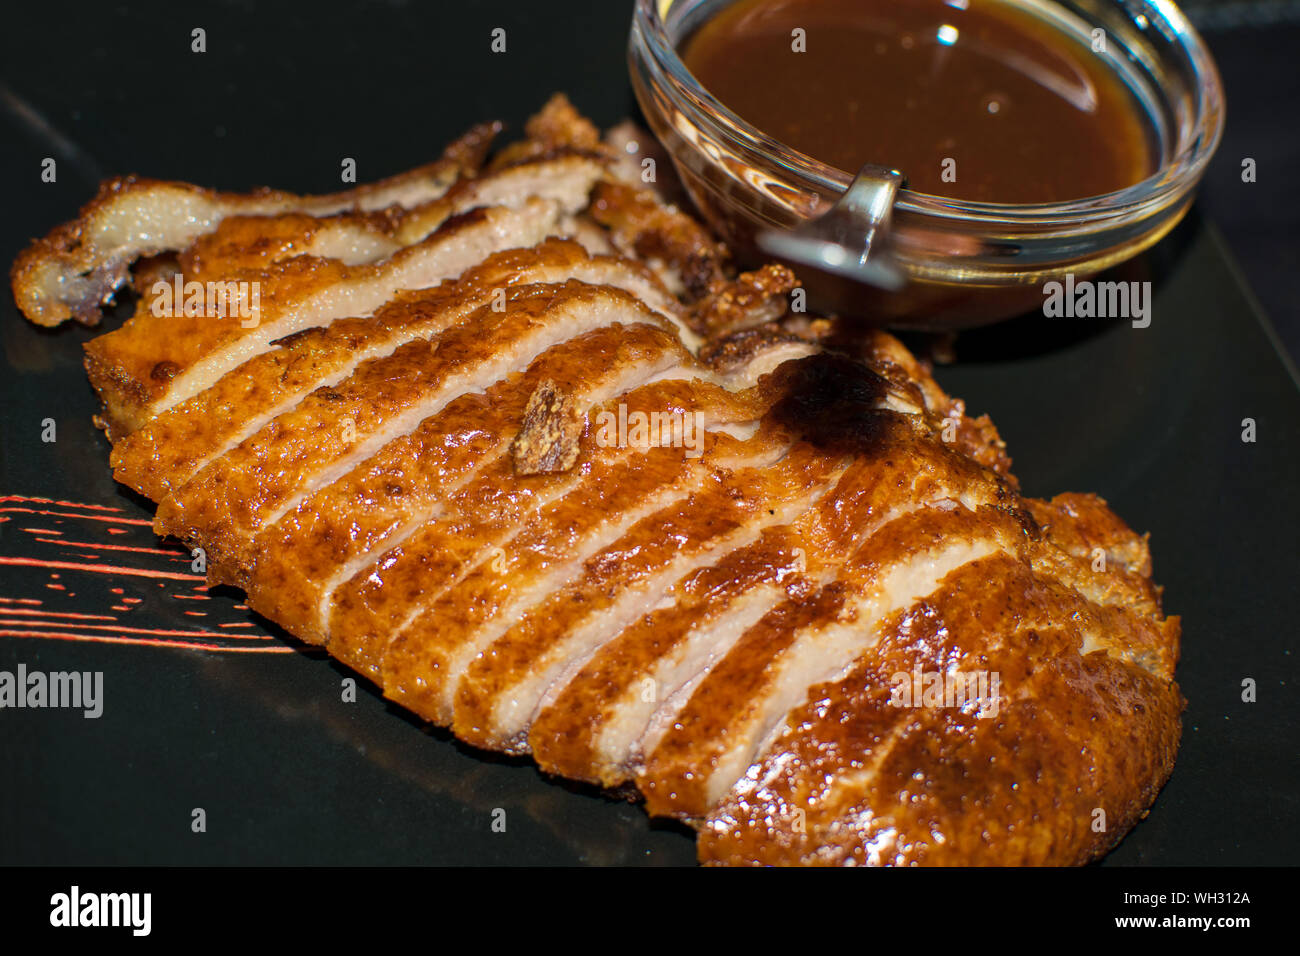 Photo en gros plan de le canard rôti servi avec sauce à l'orange sur fond noir plat. Cuisine chinoise dans l'Espagne, 2019. Canard Orange plat gastronomique. Banque D'Images